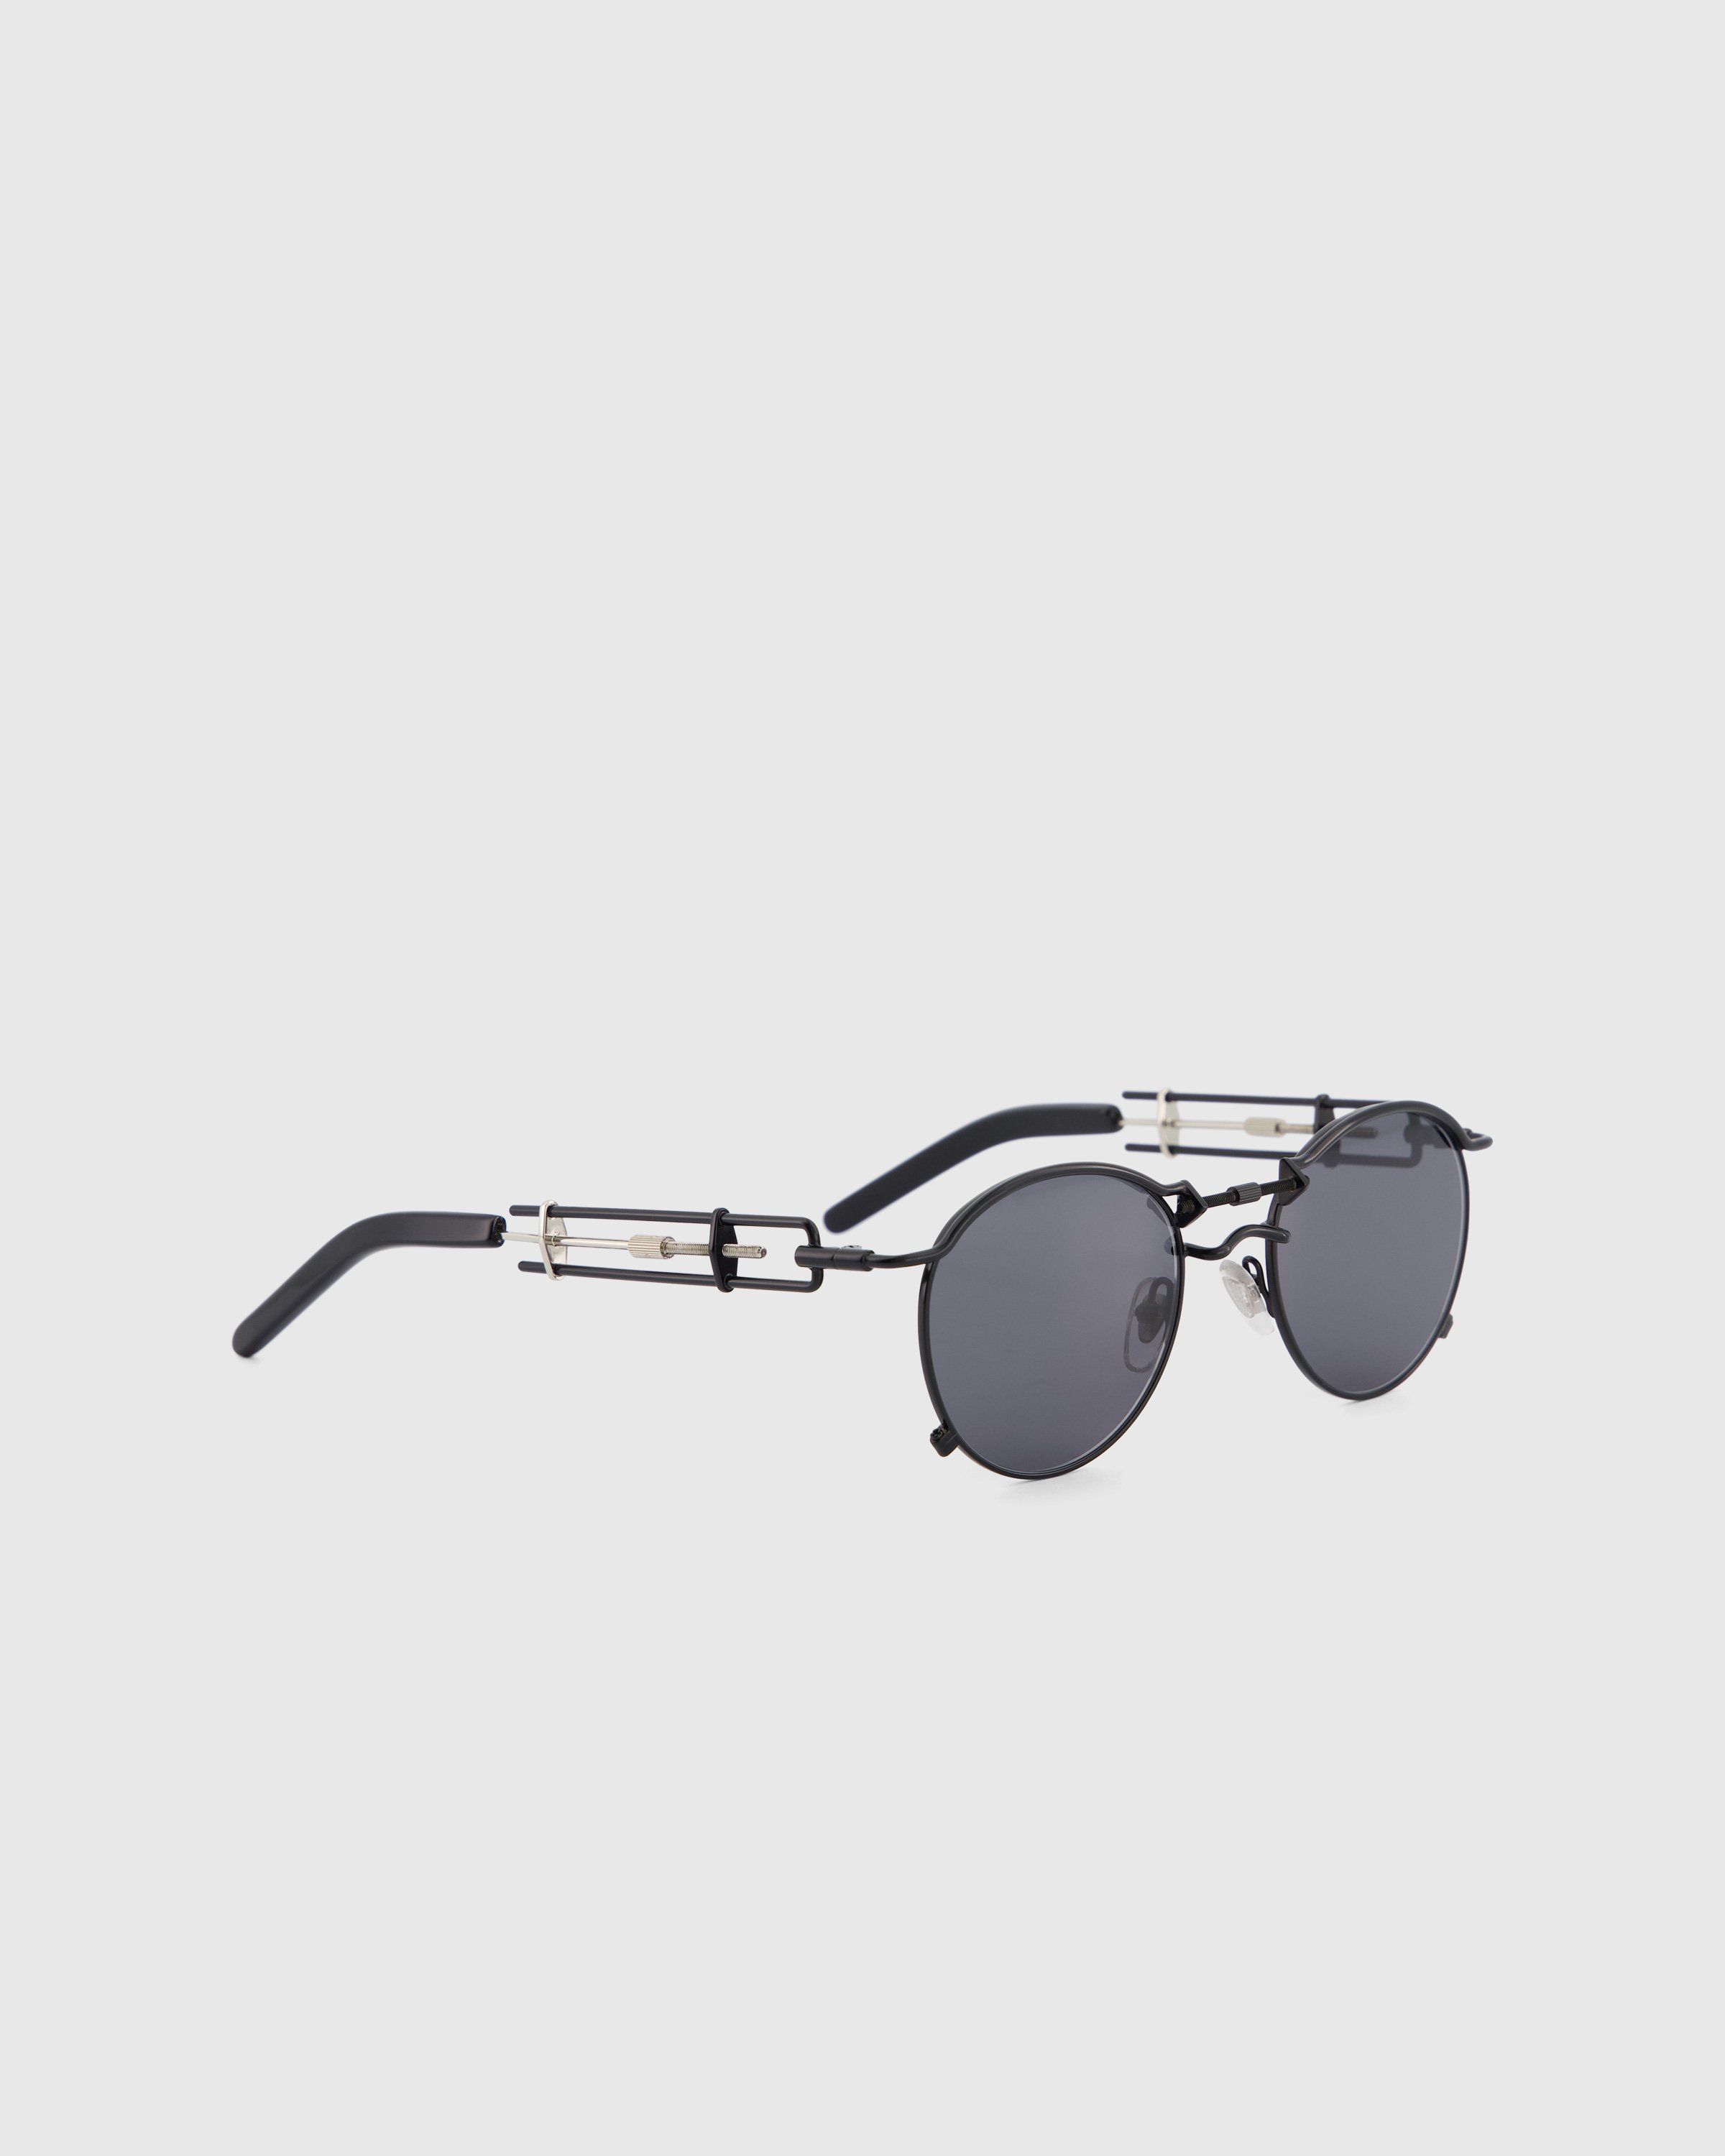 Jean Paul Gaultier x Burna Boy - 56-0174 Pas De Vis Sunglasses Black - Accessories - Black - Image 2